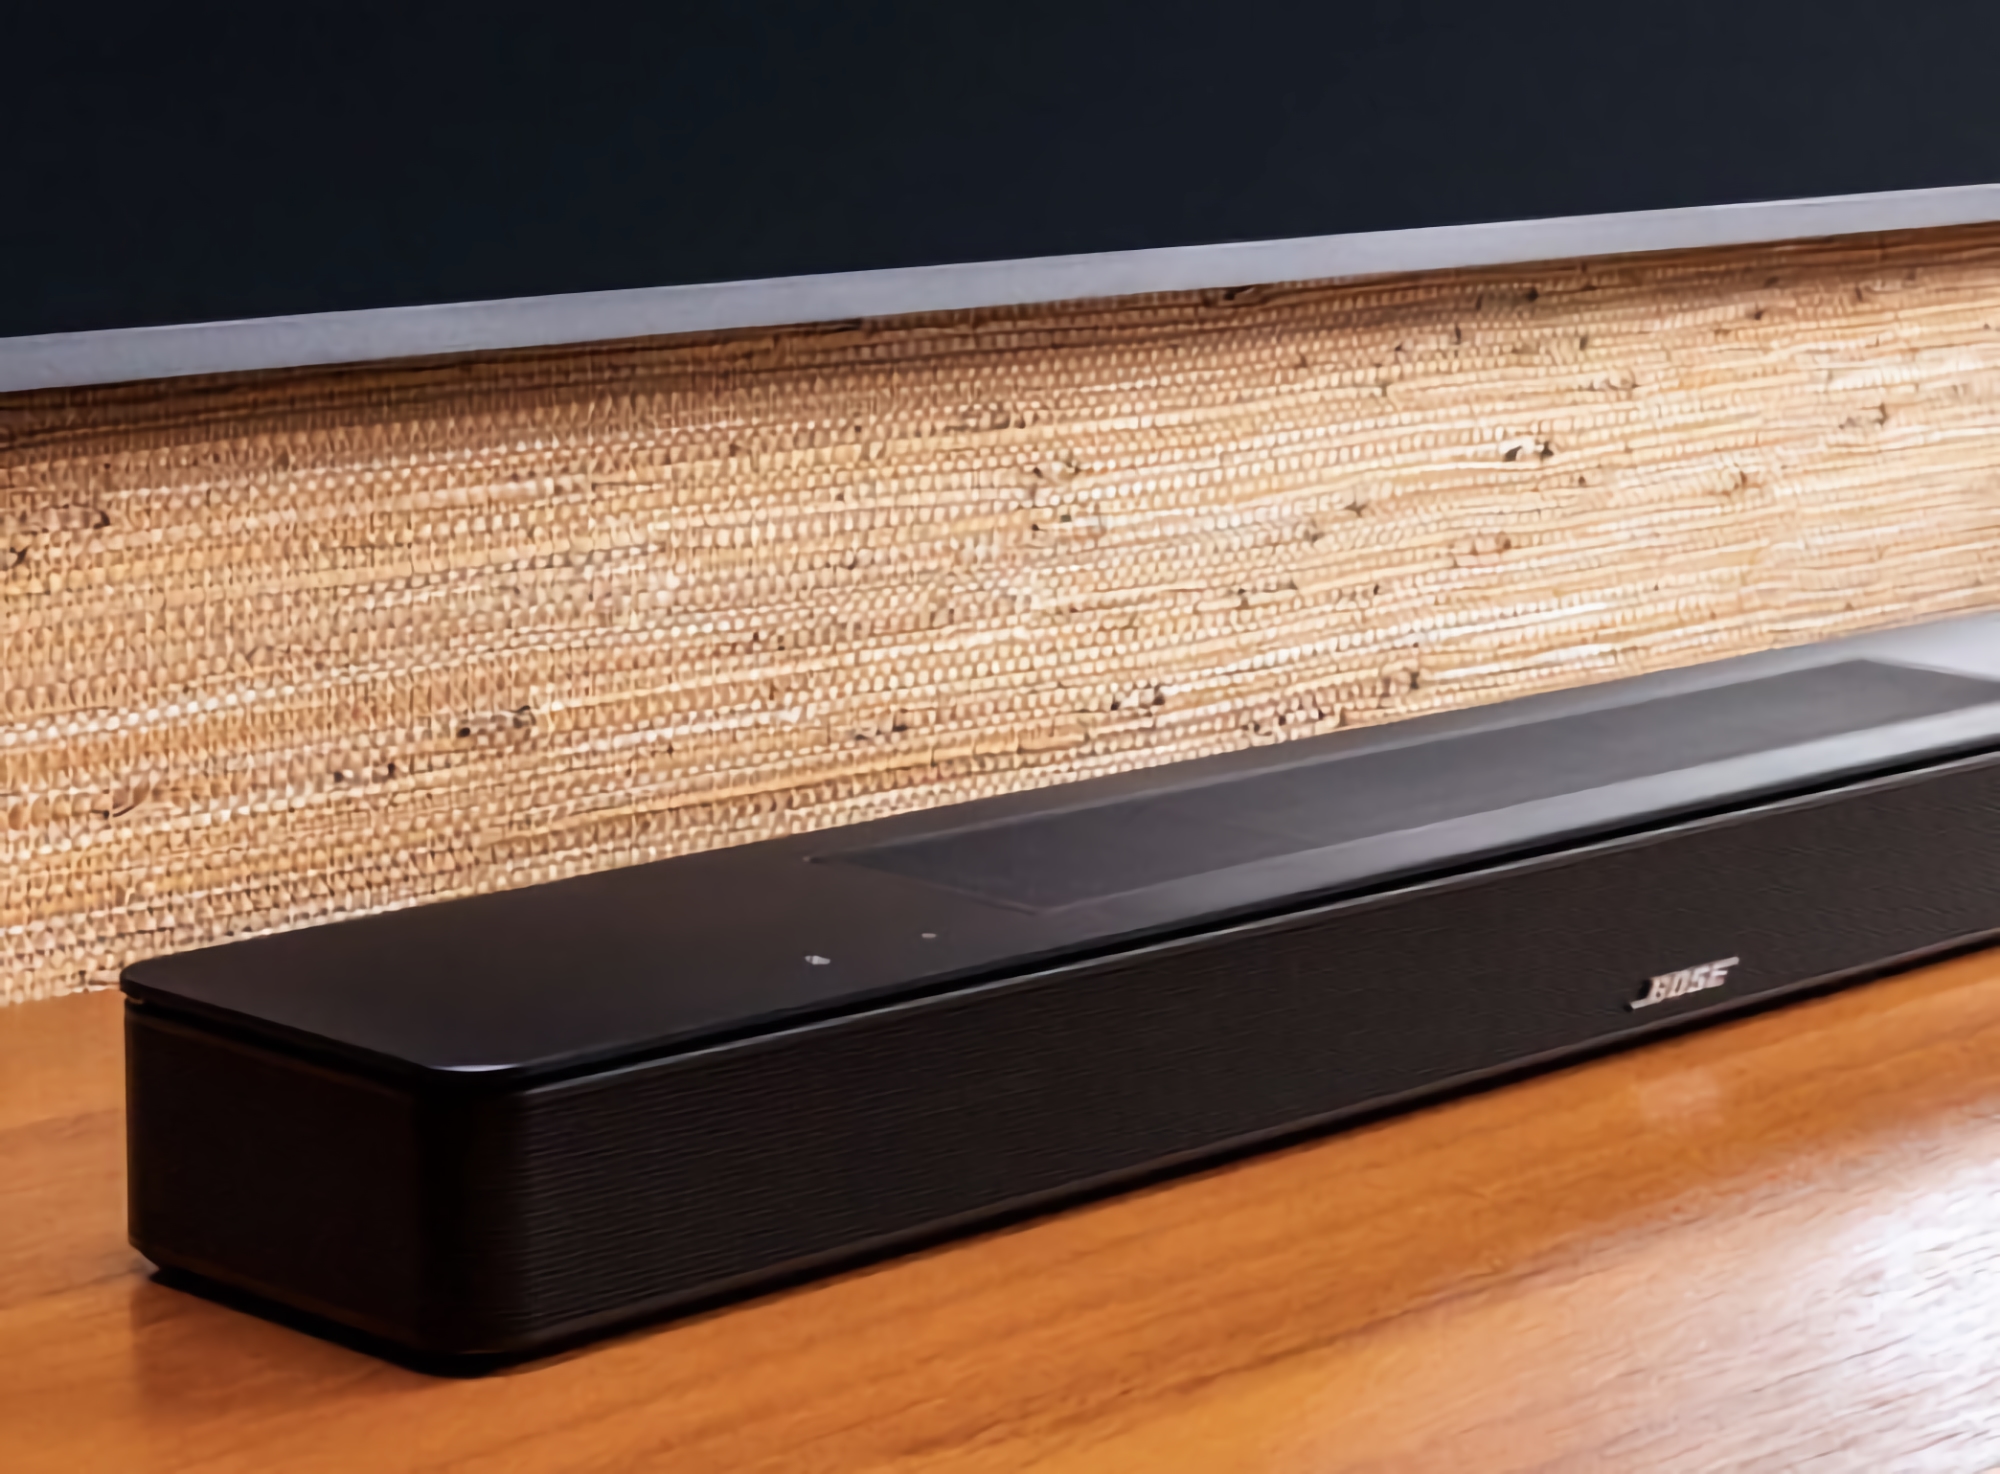 Bose stellt Soundbar 600 mit Dolby Atmos, eARC, integriertem Chromecast und Spotify Connect Unterstützung vor